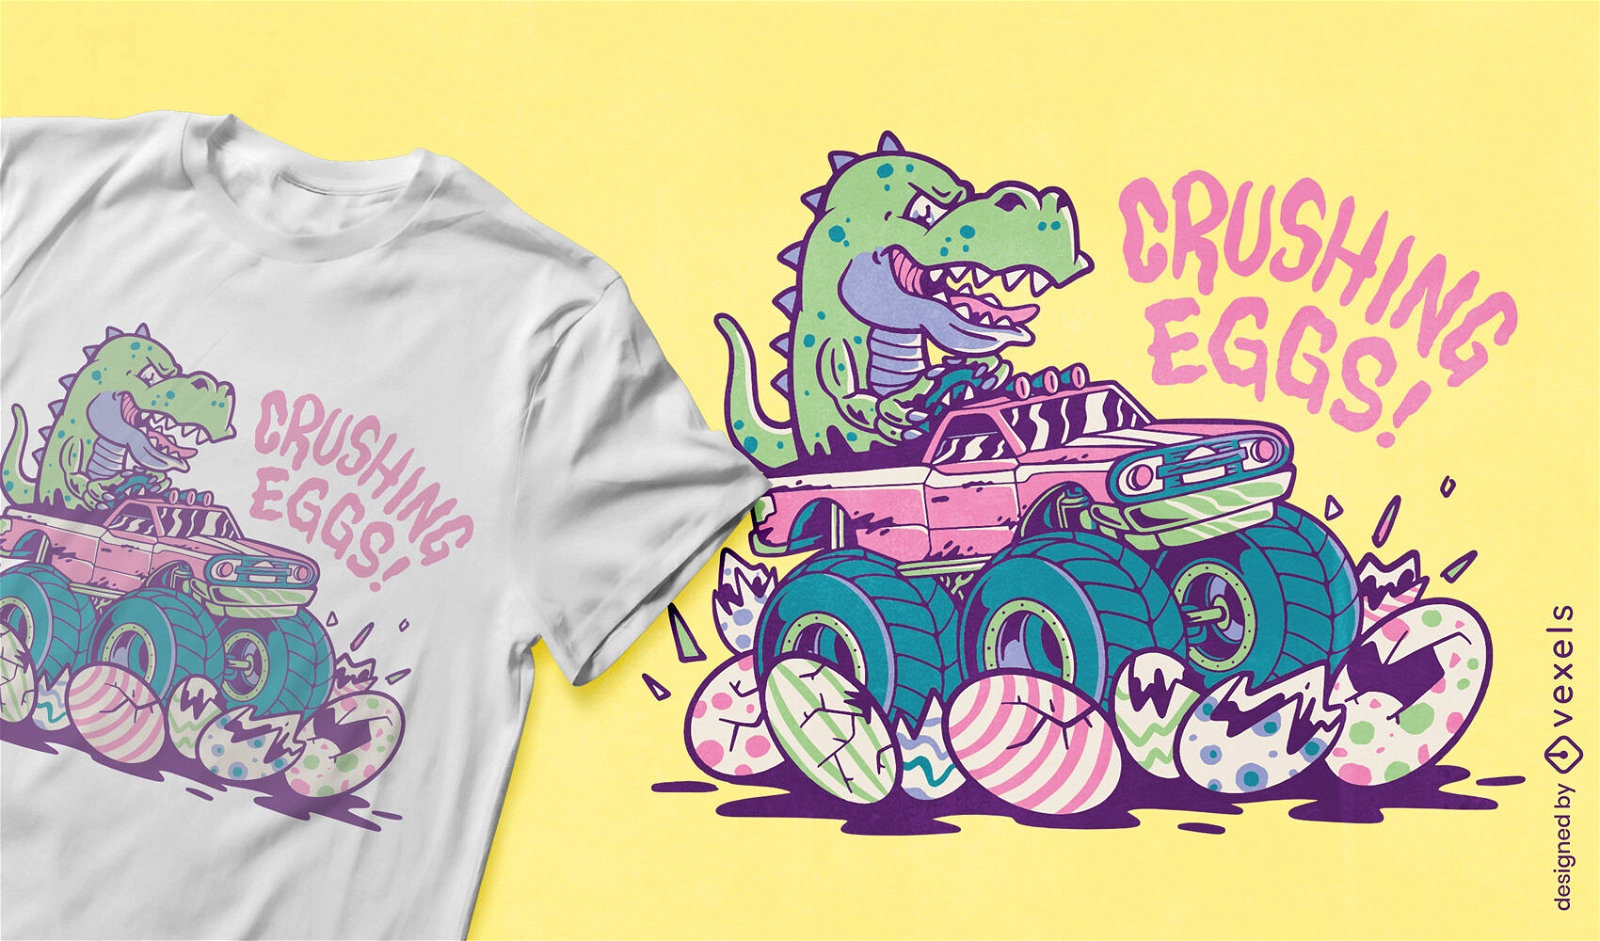 Dinosaur crashing easter eggs t-shirt design